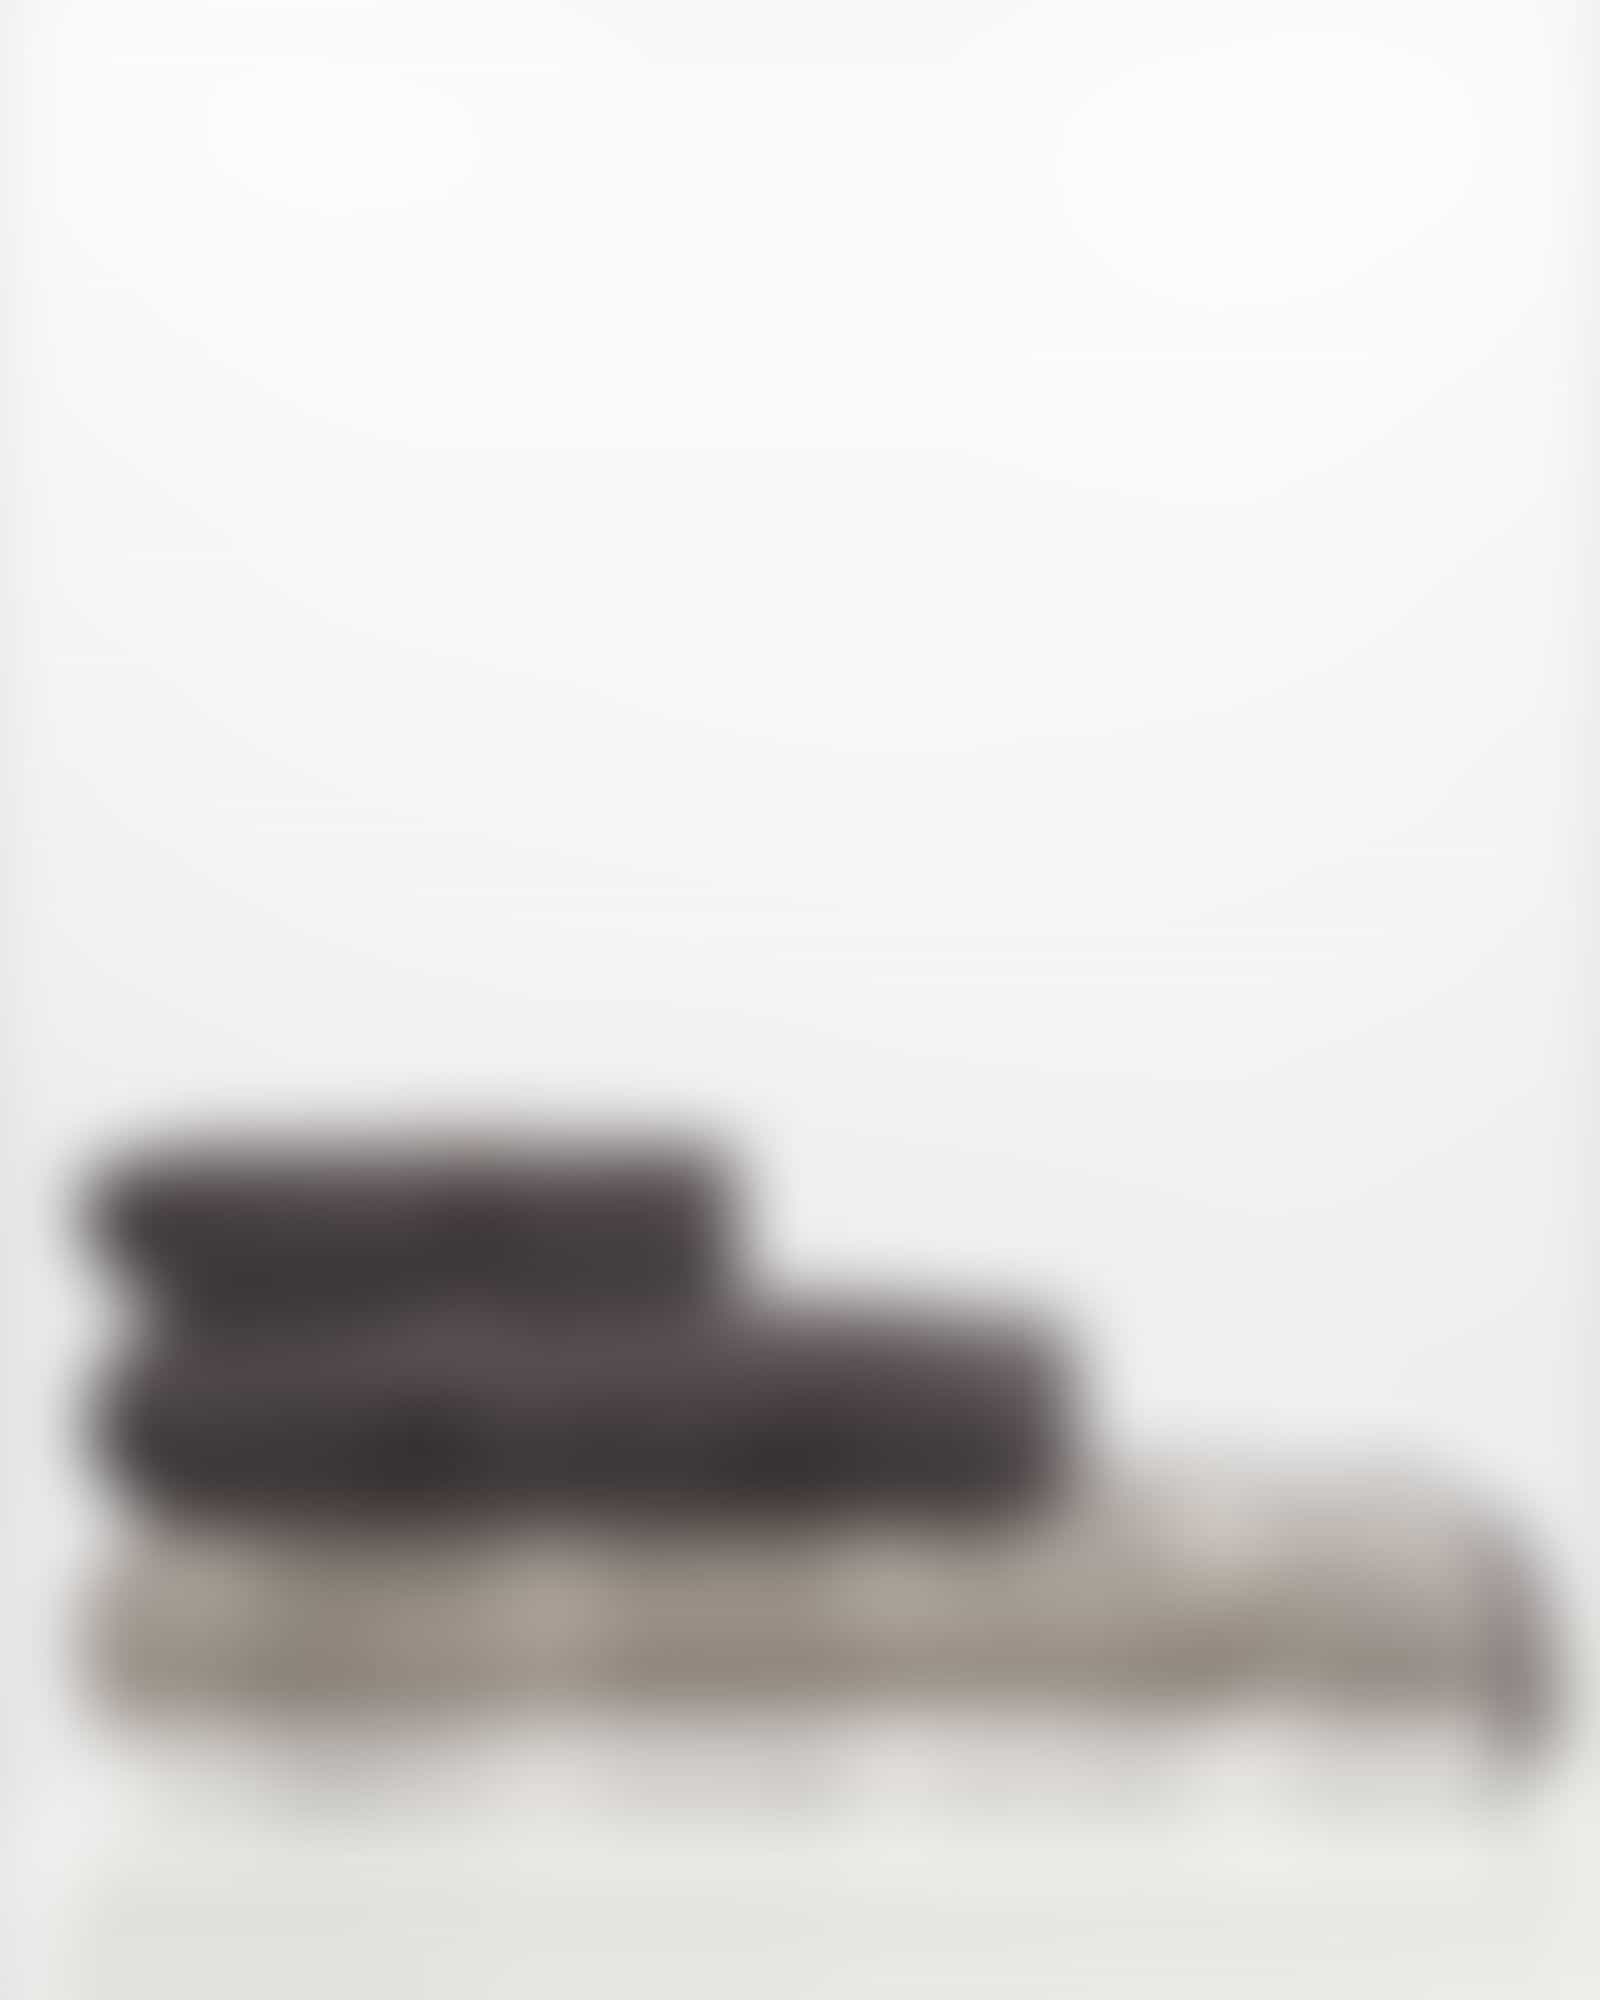 Cawö Handtücher Noblesse Stripe 1087 - Farbe: anthrazit - 77 - Gästetuch 30x50 cm